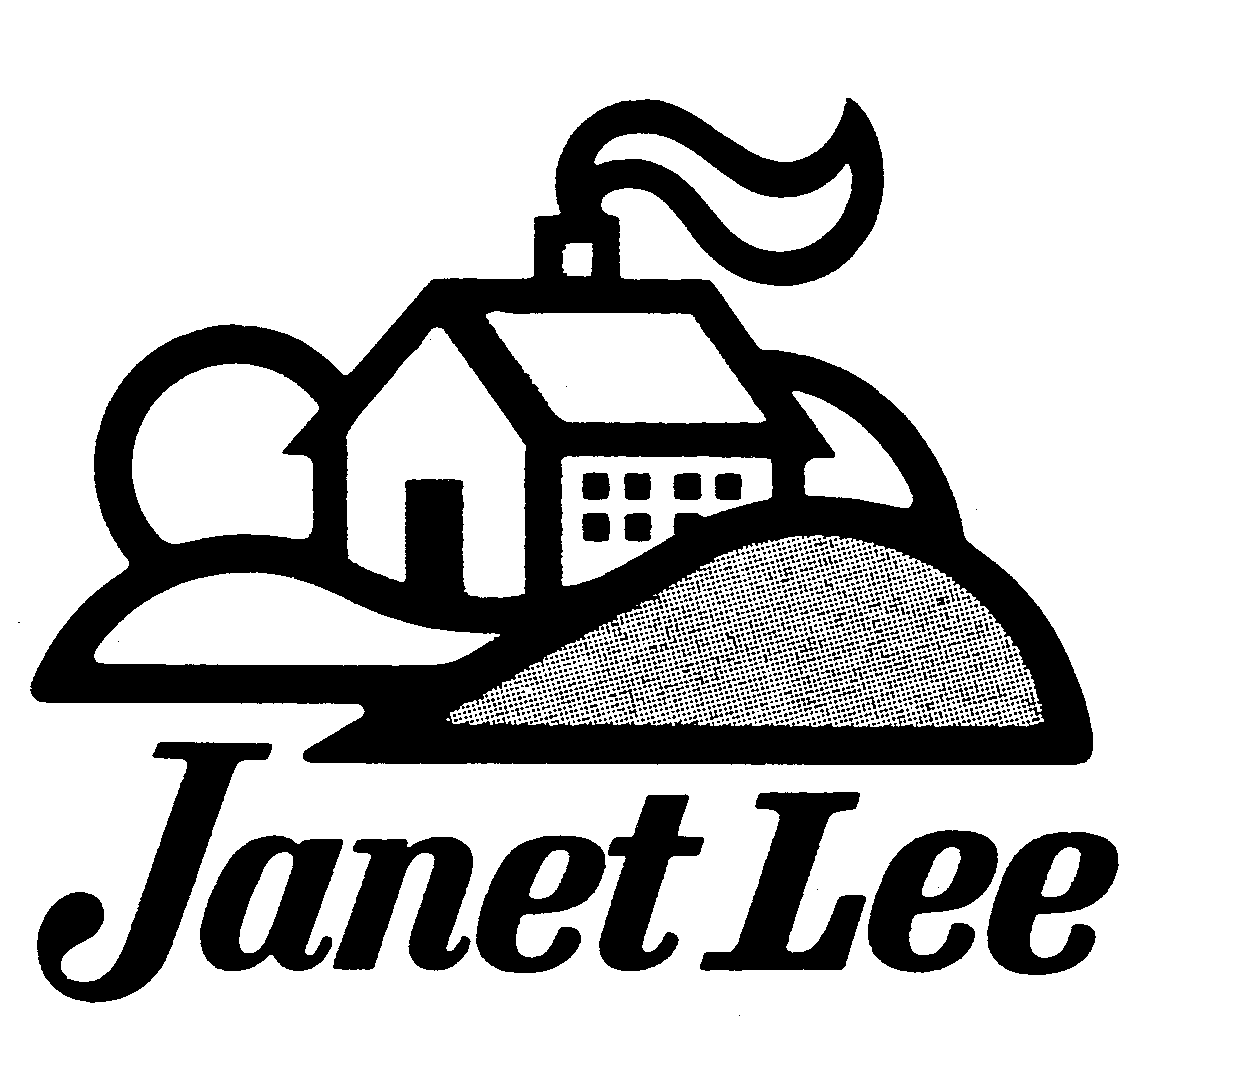  JANET LEE